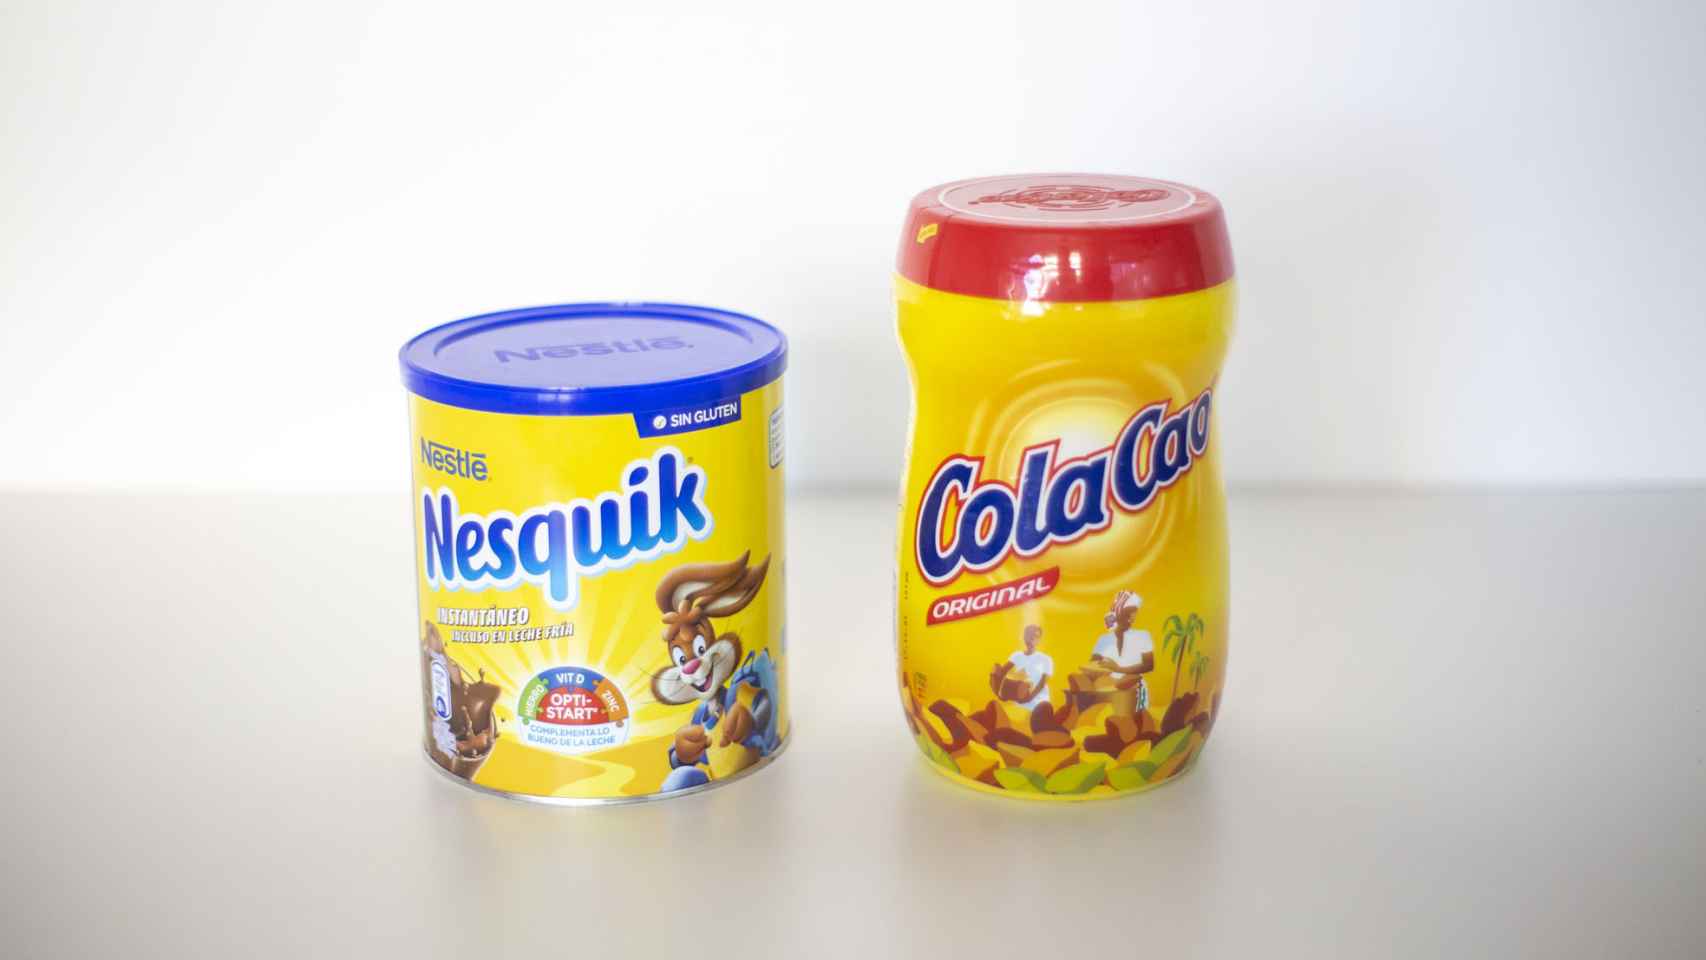 Cola Cao vs. Nesquik: ¿hay algún cacao en polvo mejor que otro?